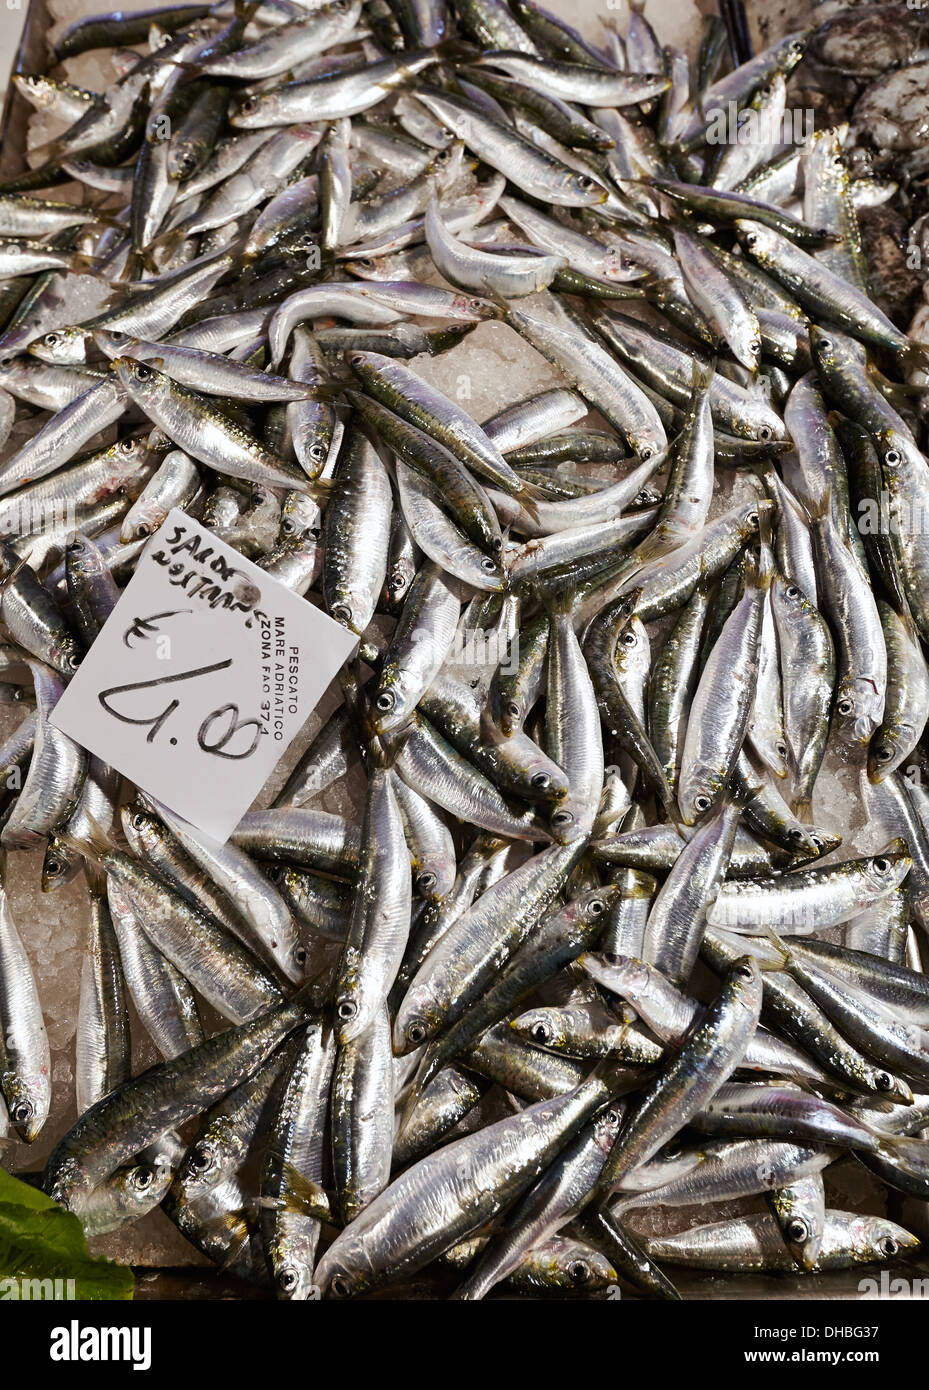 Fresh sardines for sale at the Rialto markets, Venice, Italy. Stock Photo